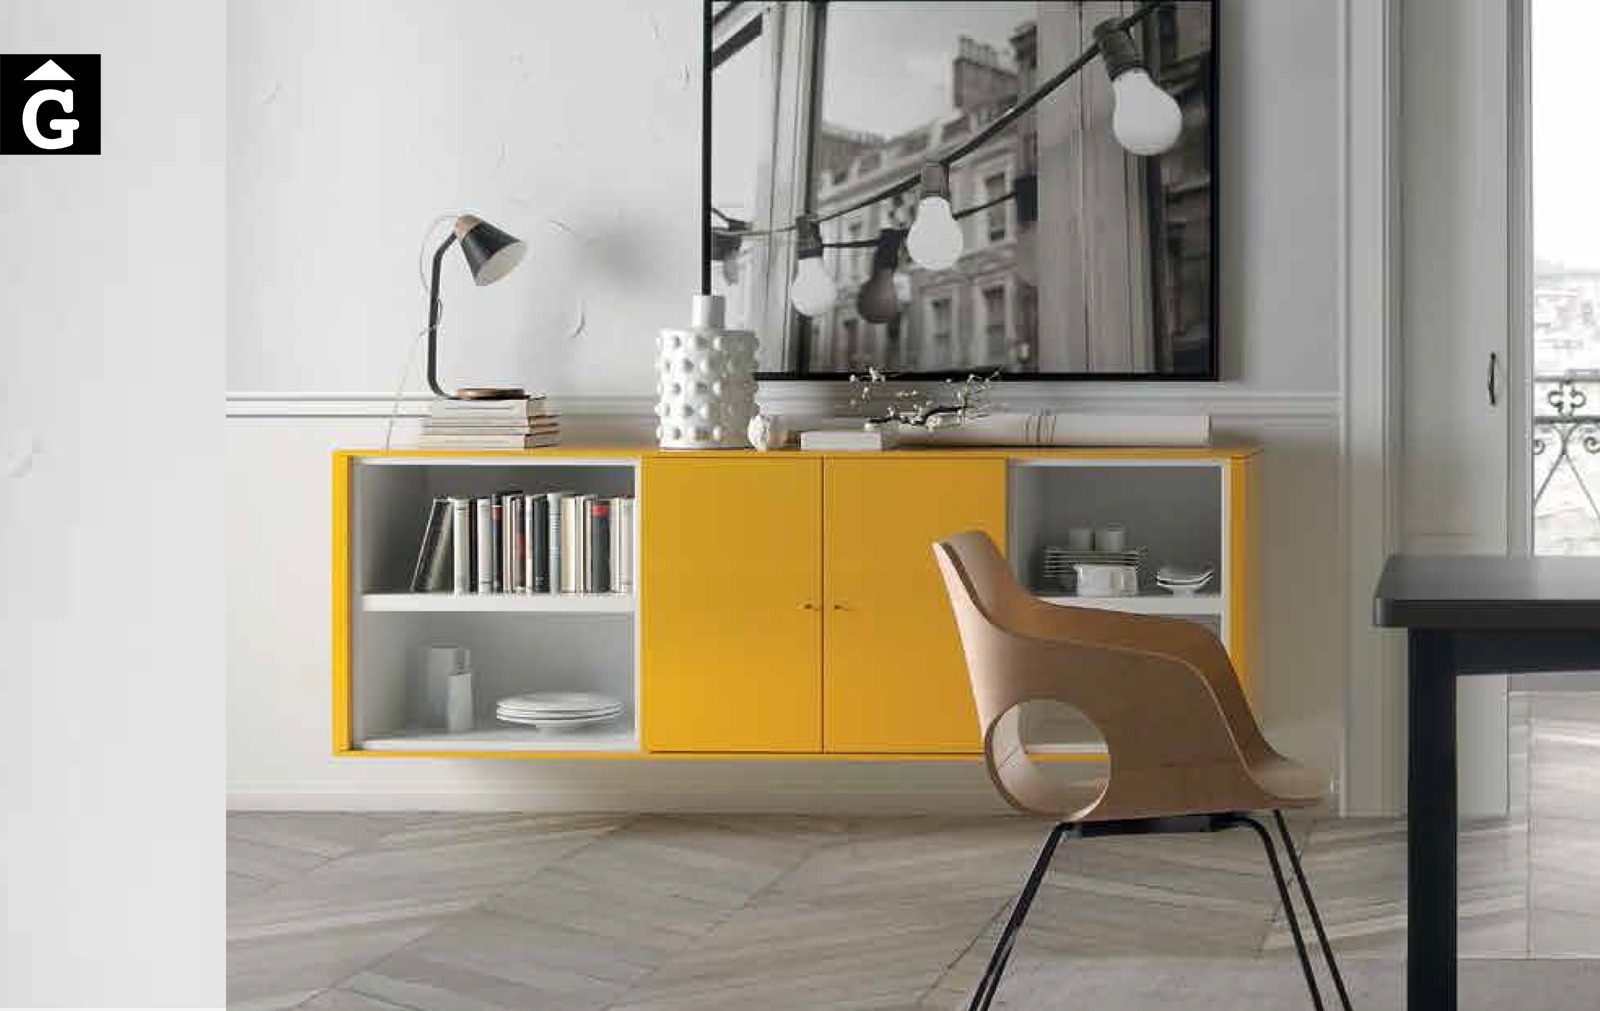 25 00 Bufet ios mostassa Loyra muebles by mobles Gifreu Idees per la llar moble de qualitat